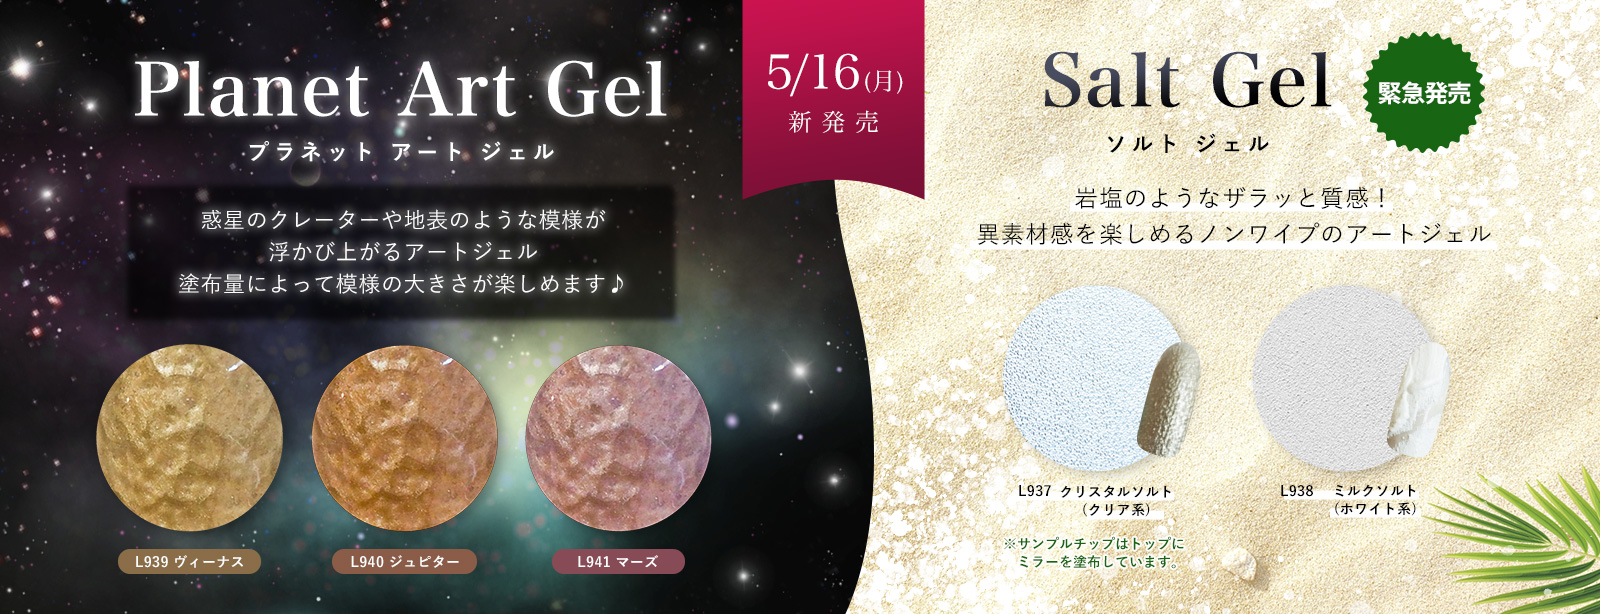 【新商品】5月16日発売の新商品へソルトジェルシリーズが追加発売!!